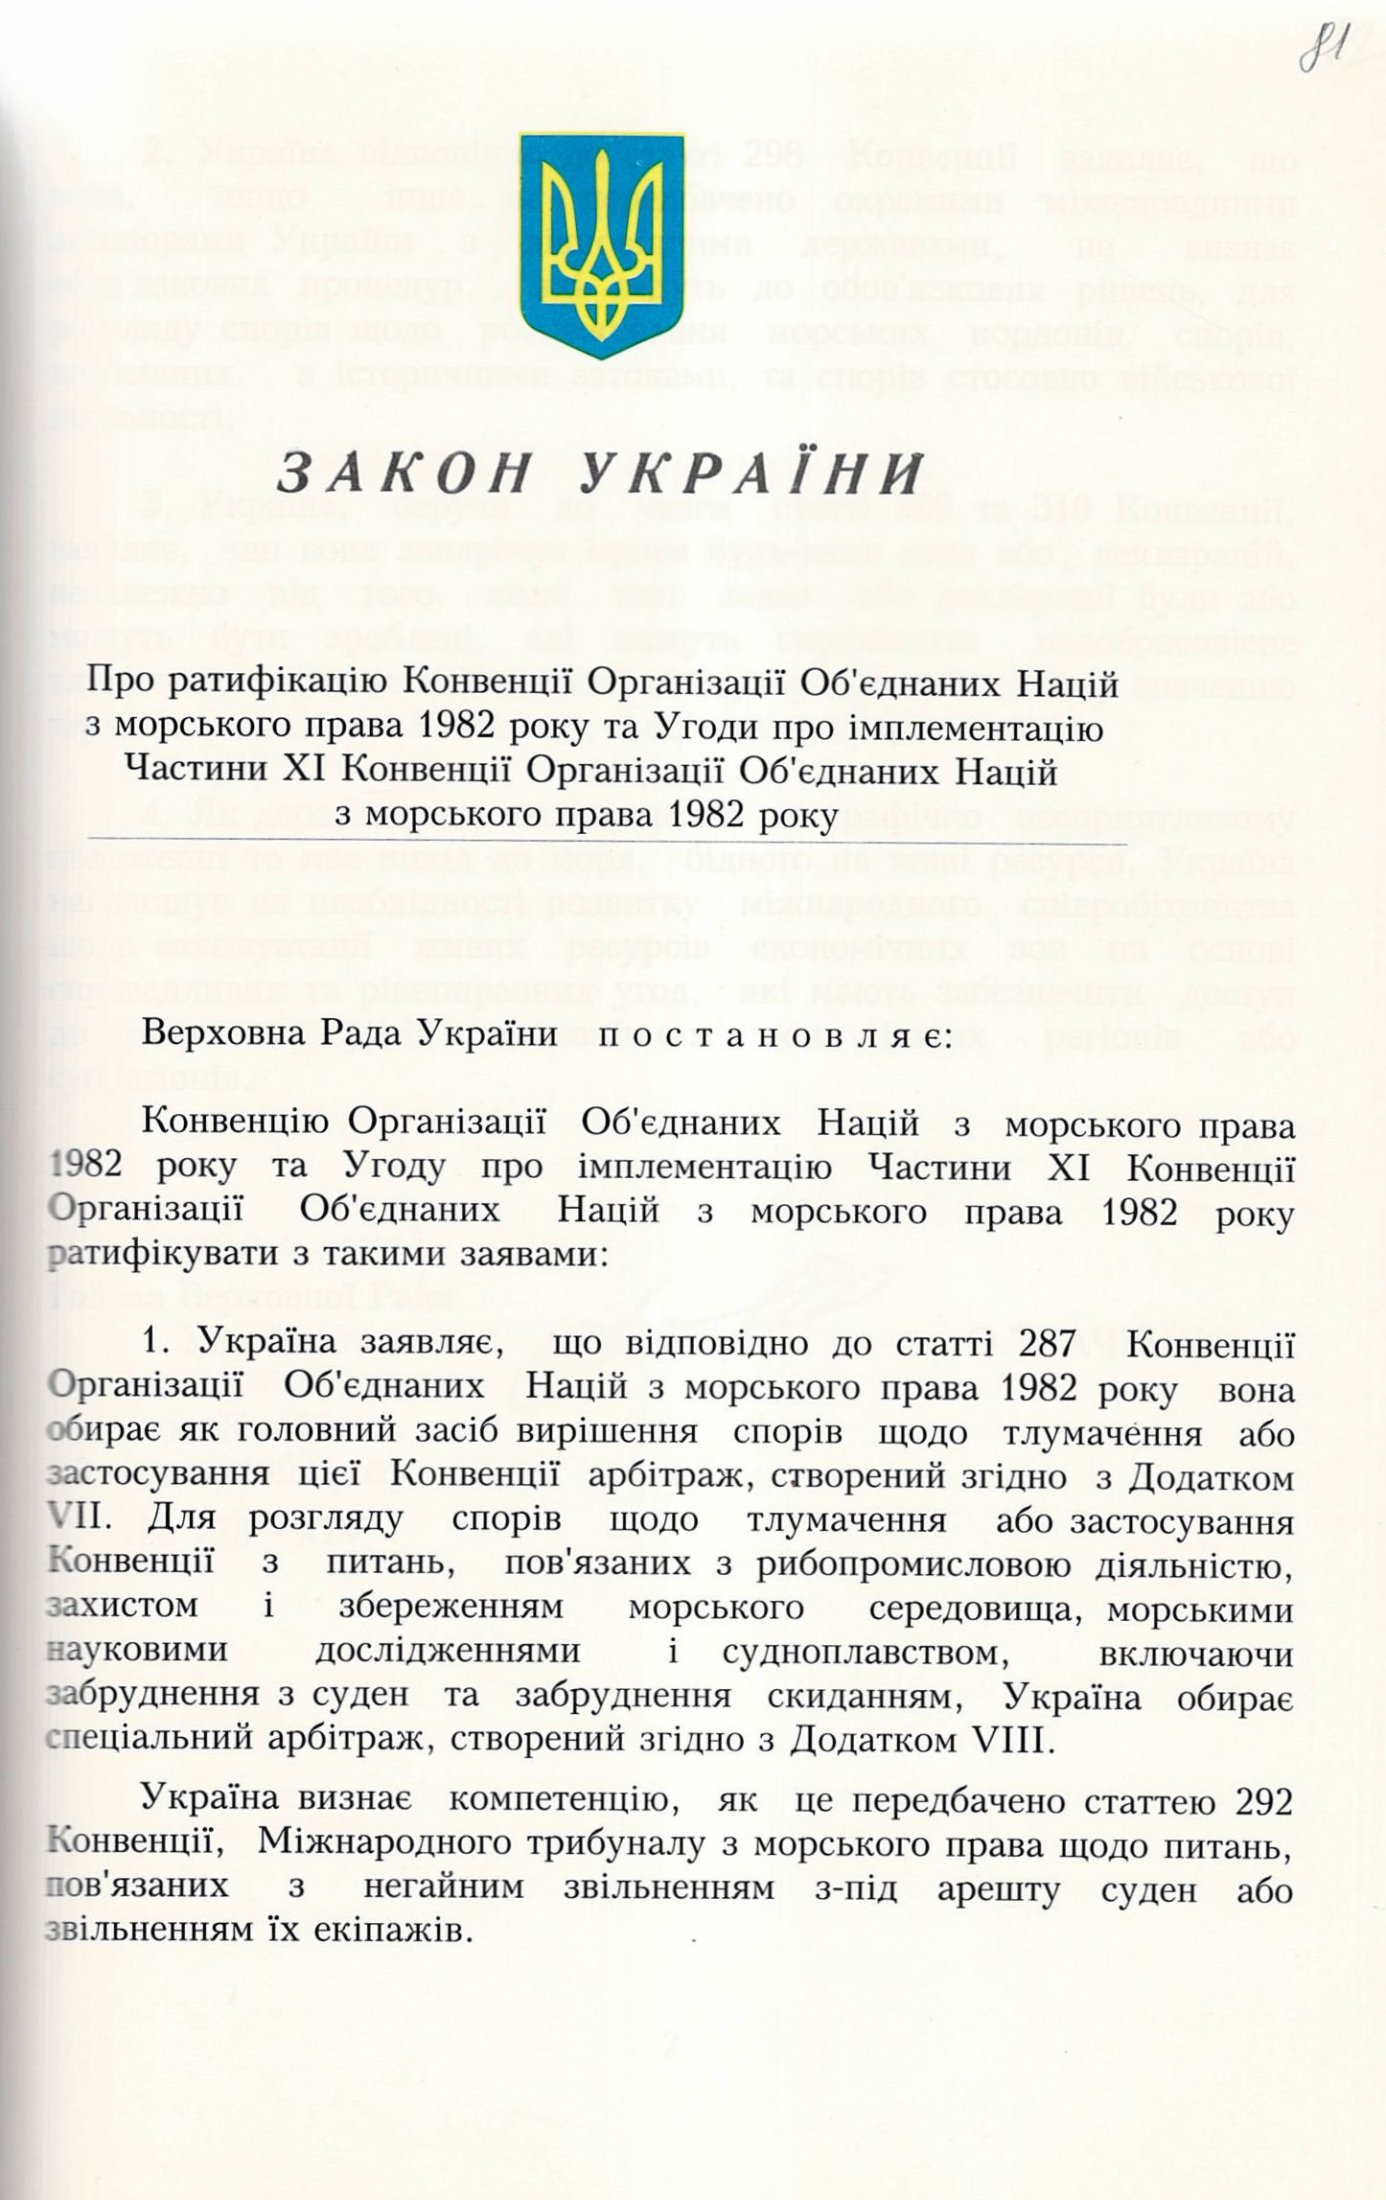 Закон України № 728-ХІV «Про ратифікацію Конвенції Організації Об'єднаних Націй з морського права 1982 року та Угоди про імплементацію Частини ХІ Конвенції Організації Об'єднаних Націй з морського права 1982 року». 3 червня 1999 р.